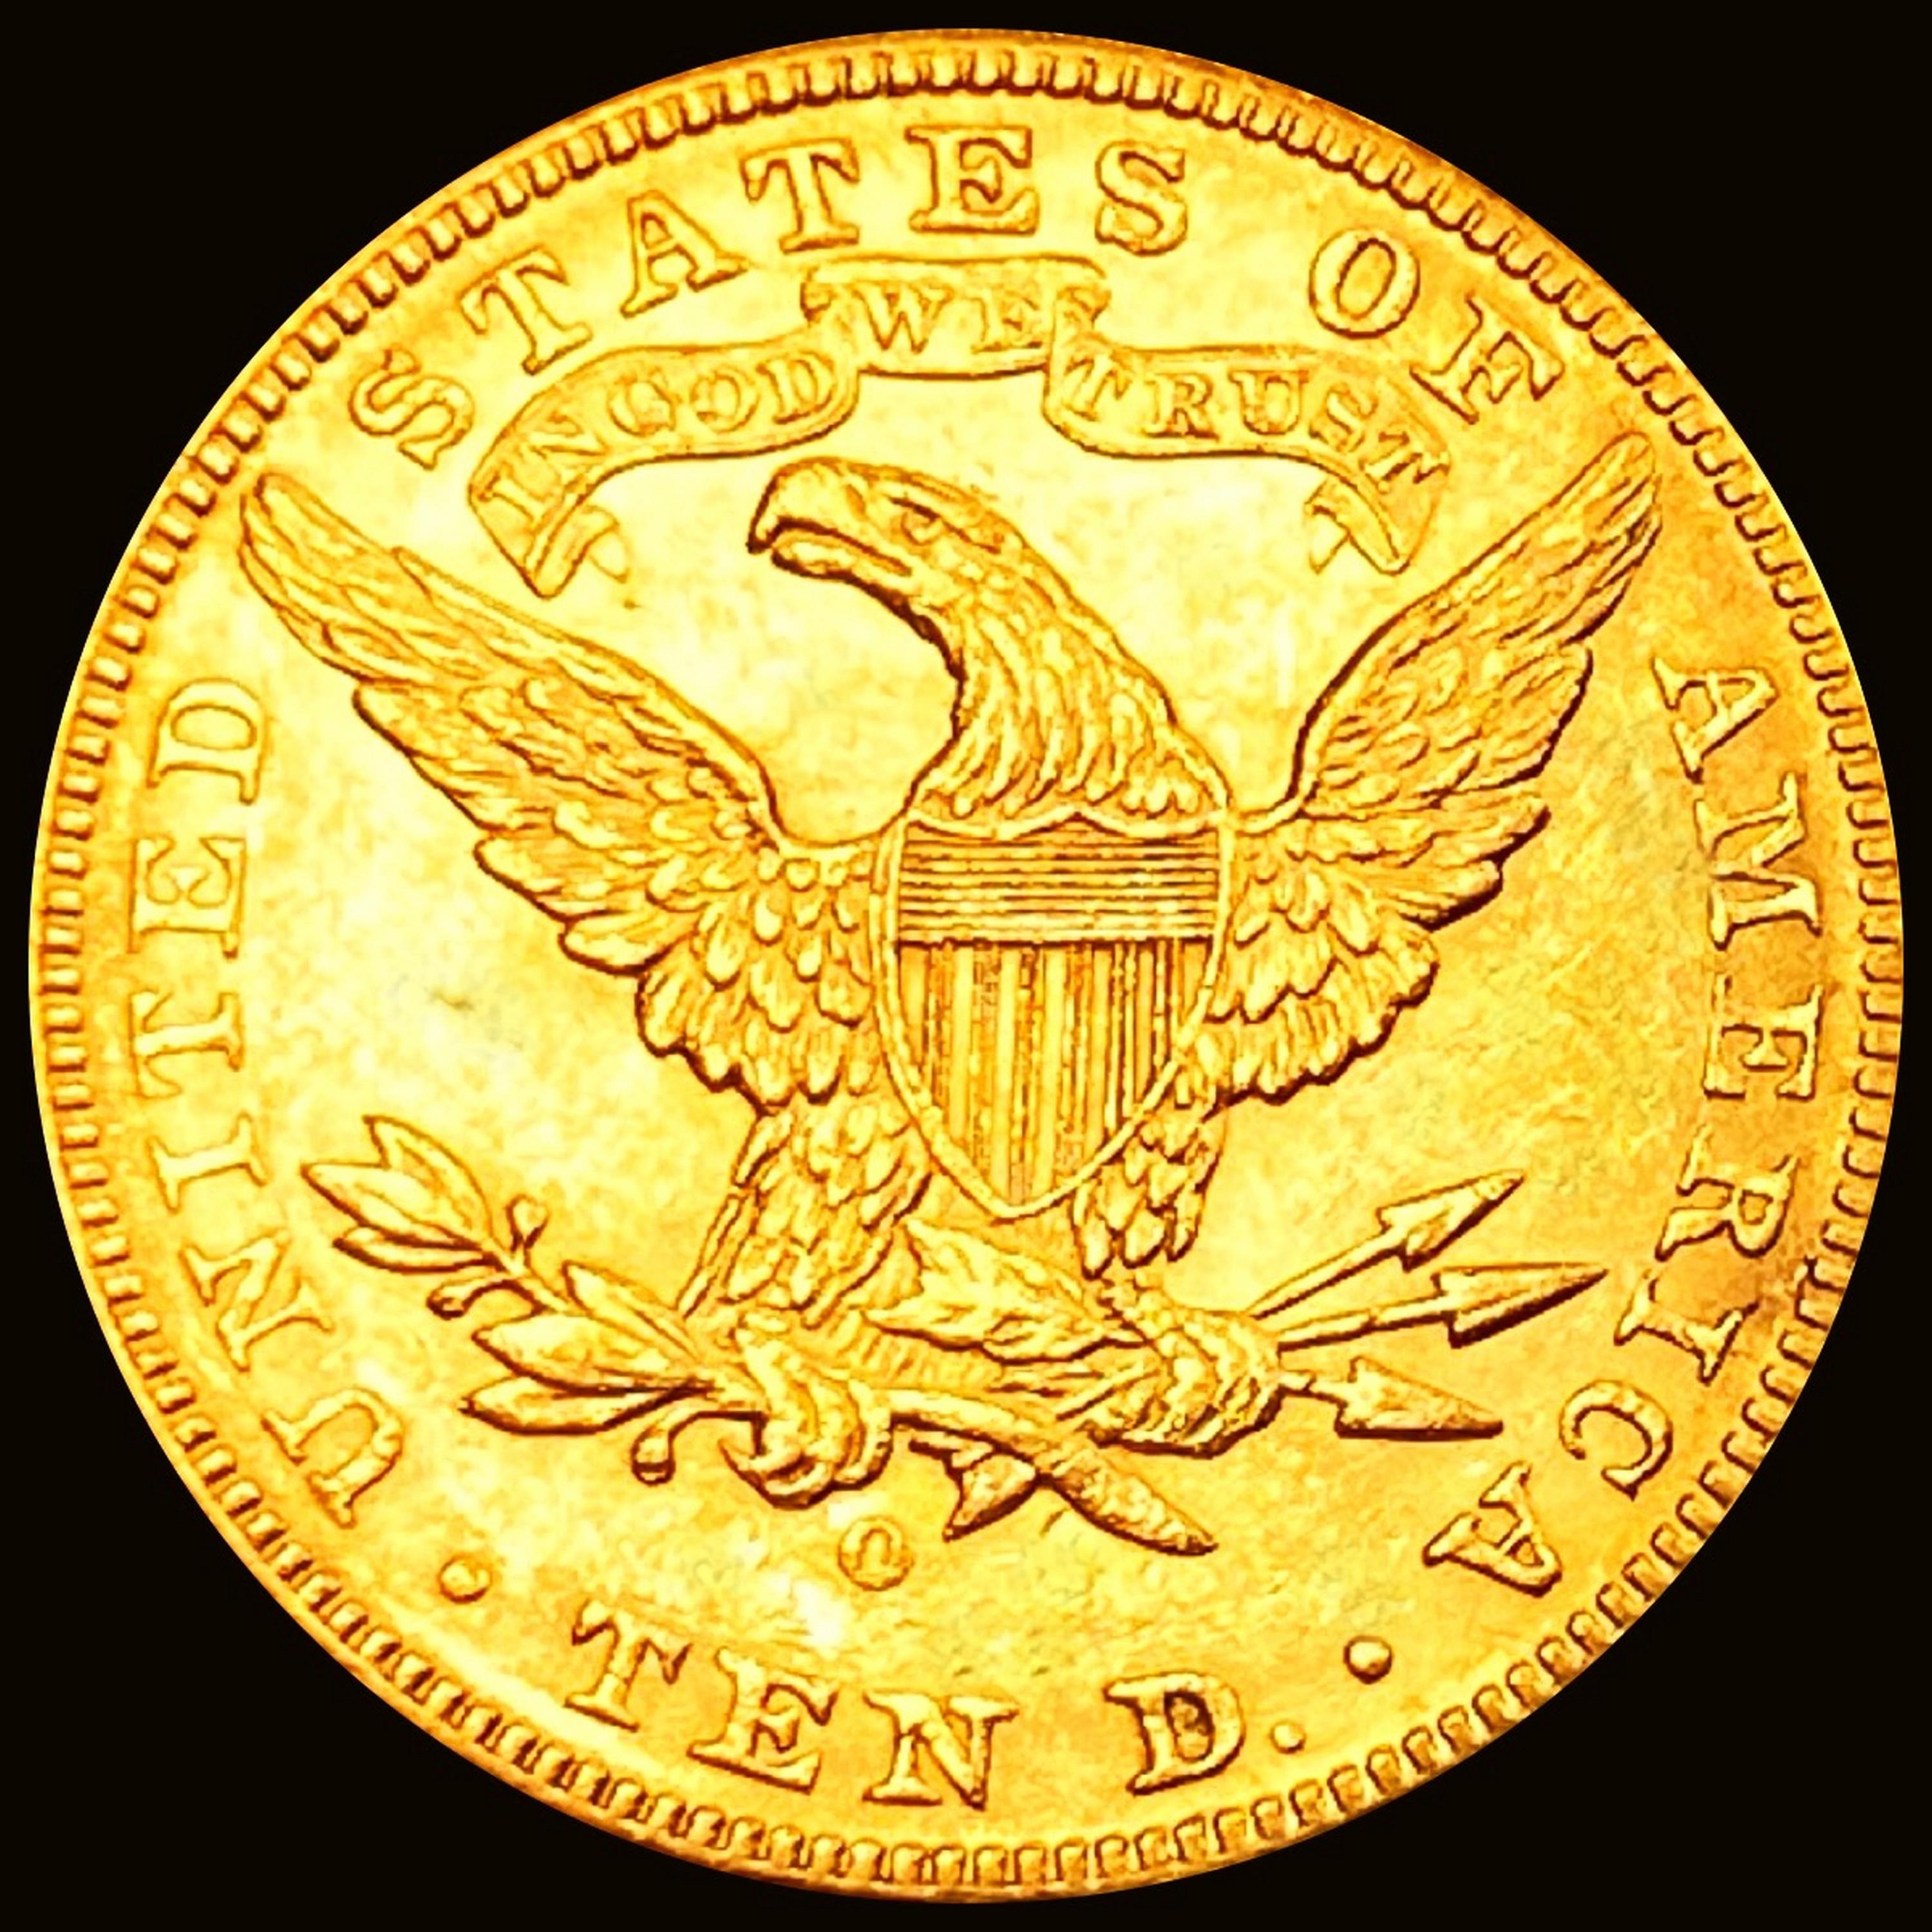 1892-O $10 Gold Eagle CHOICE BU